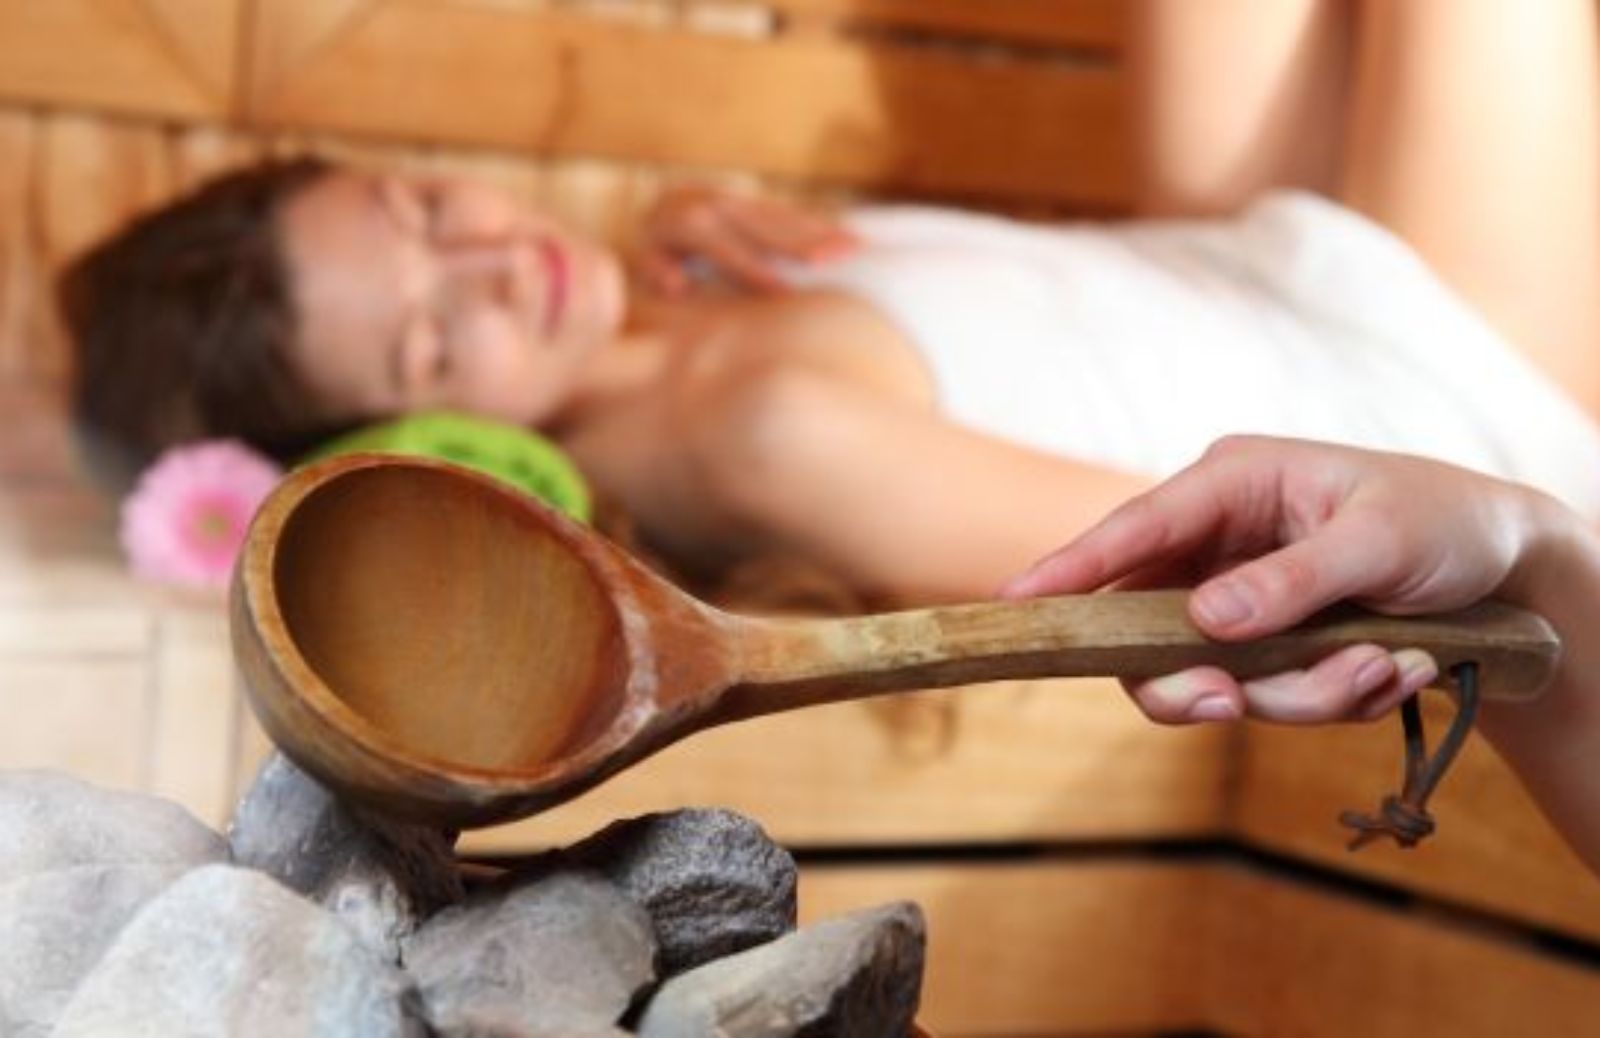 Come sfruttare i benefici della sauna senza rischi per la salute